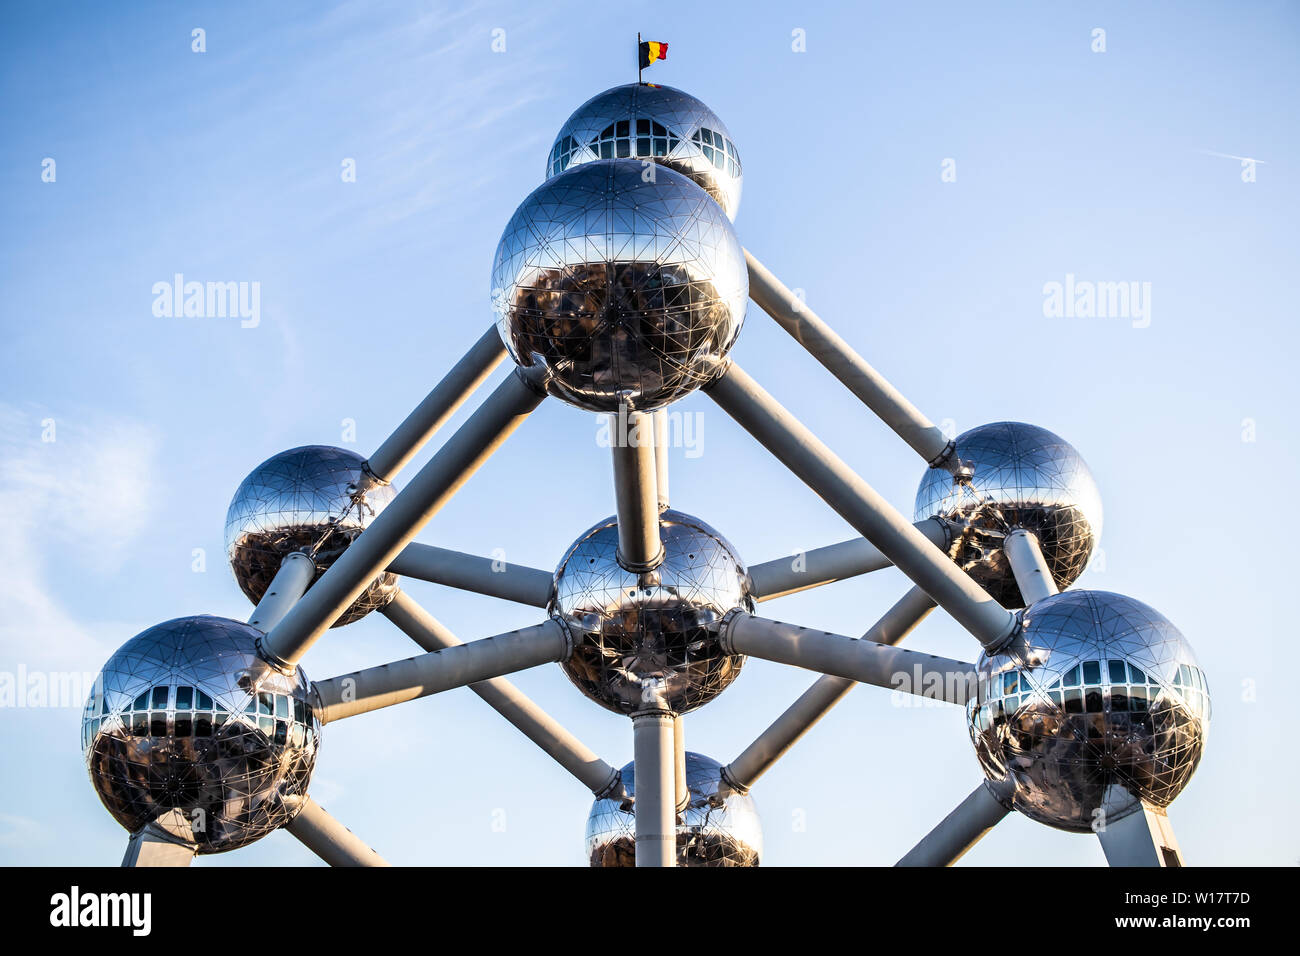 Bruxelles, Belgique, Jan 2019 Atomium, hiver ciel bleu nuages, Atomium représente neuf atomes de fer en forme de cubiques centrés cellule de cristal de fer Banque D'Images